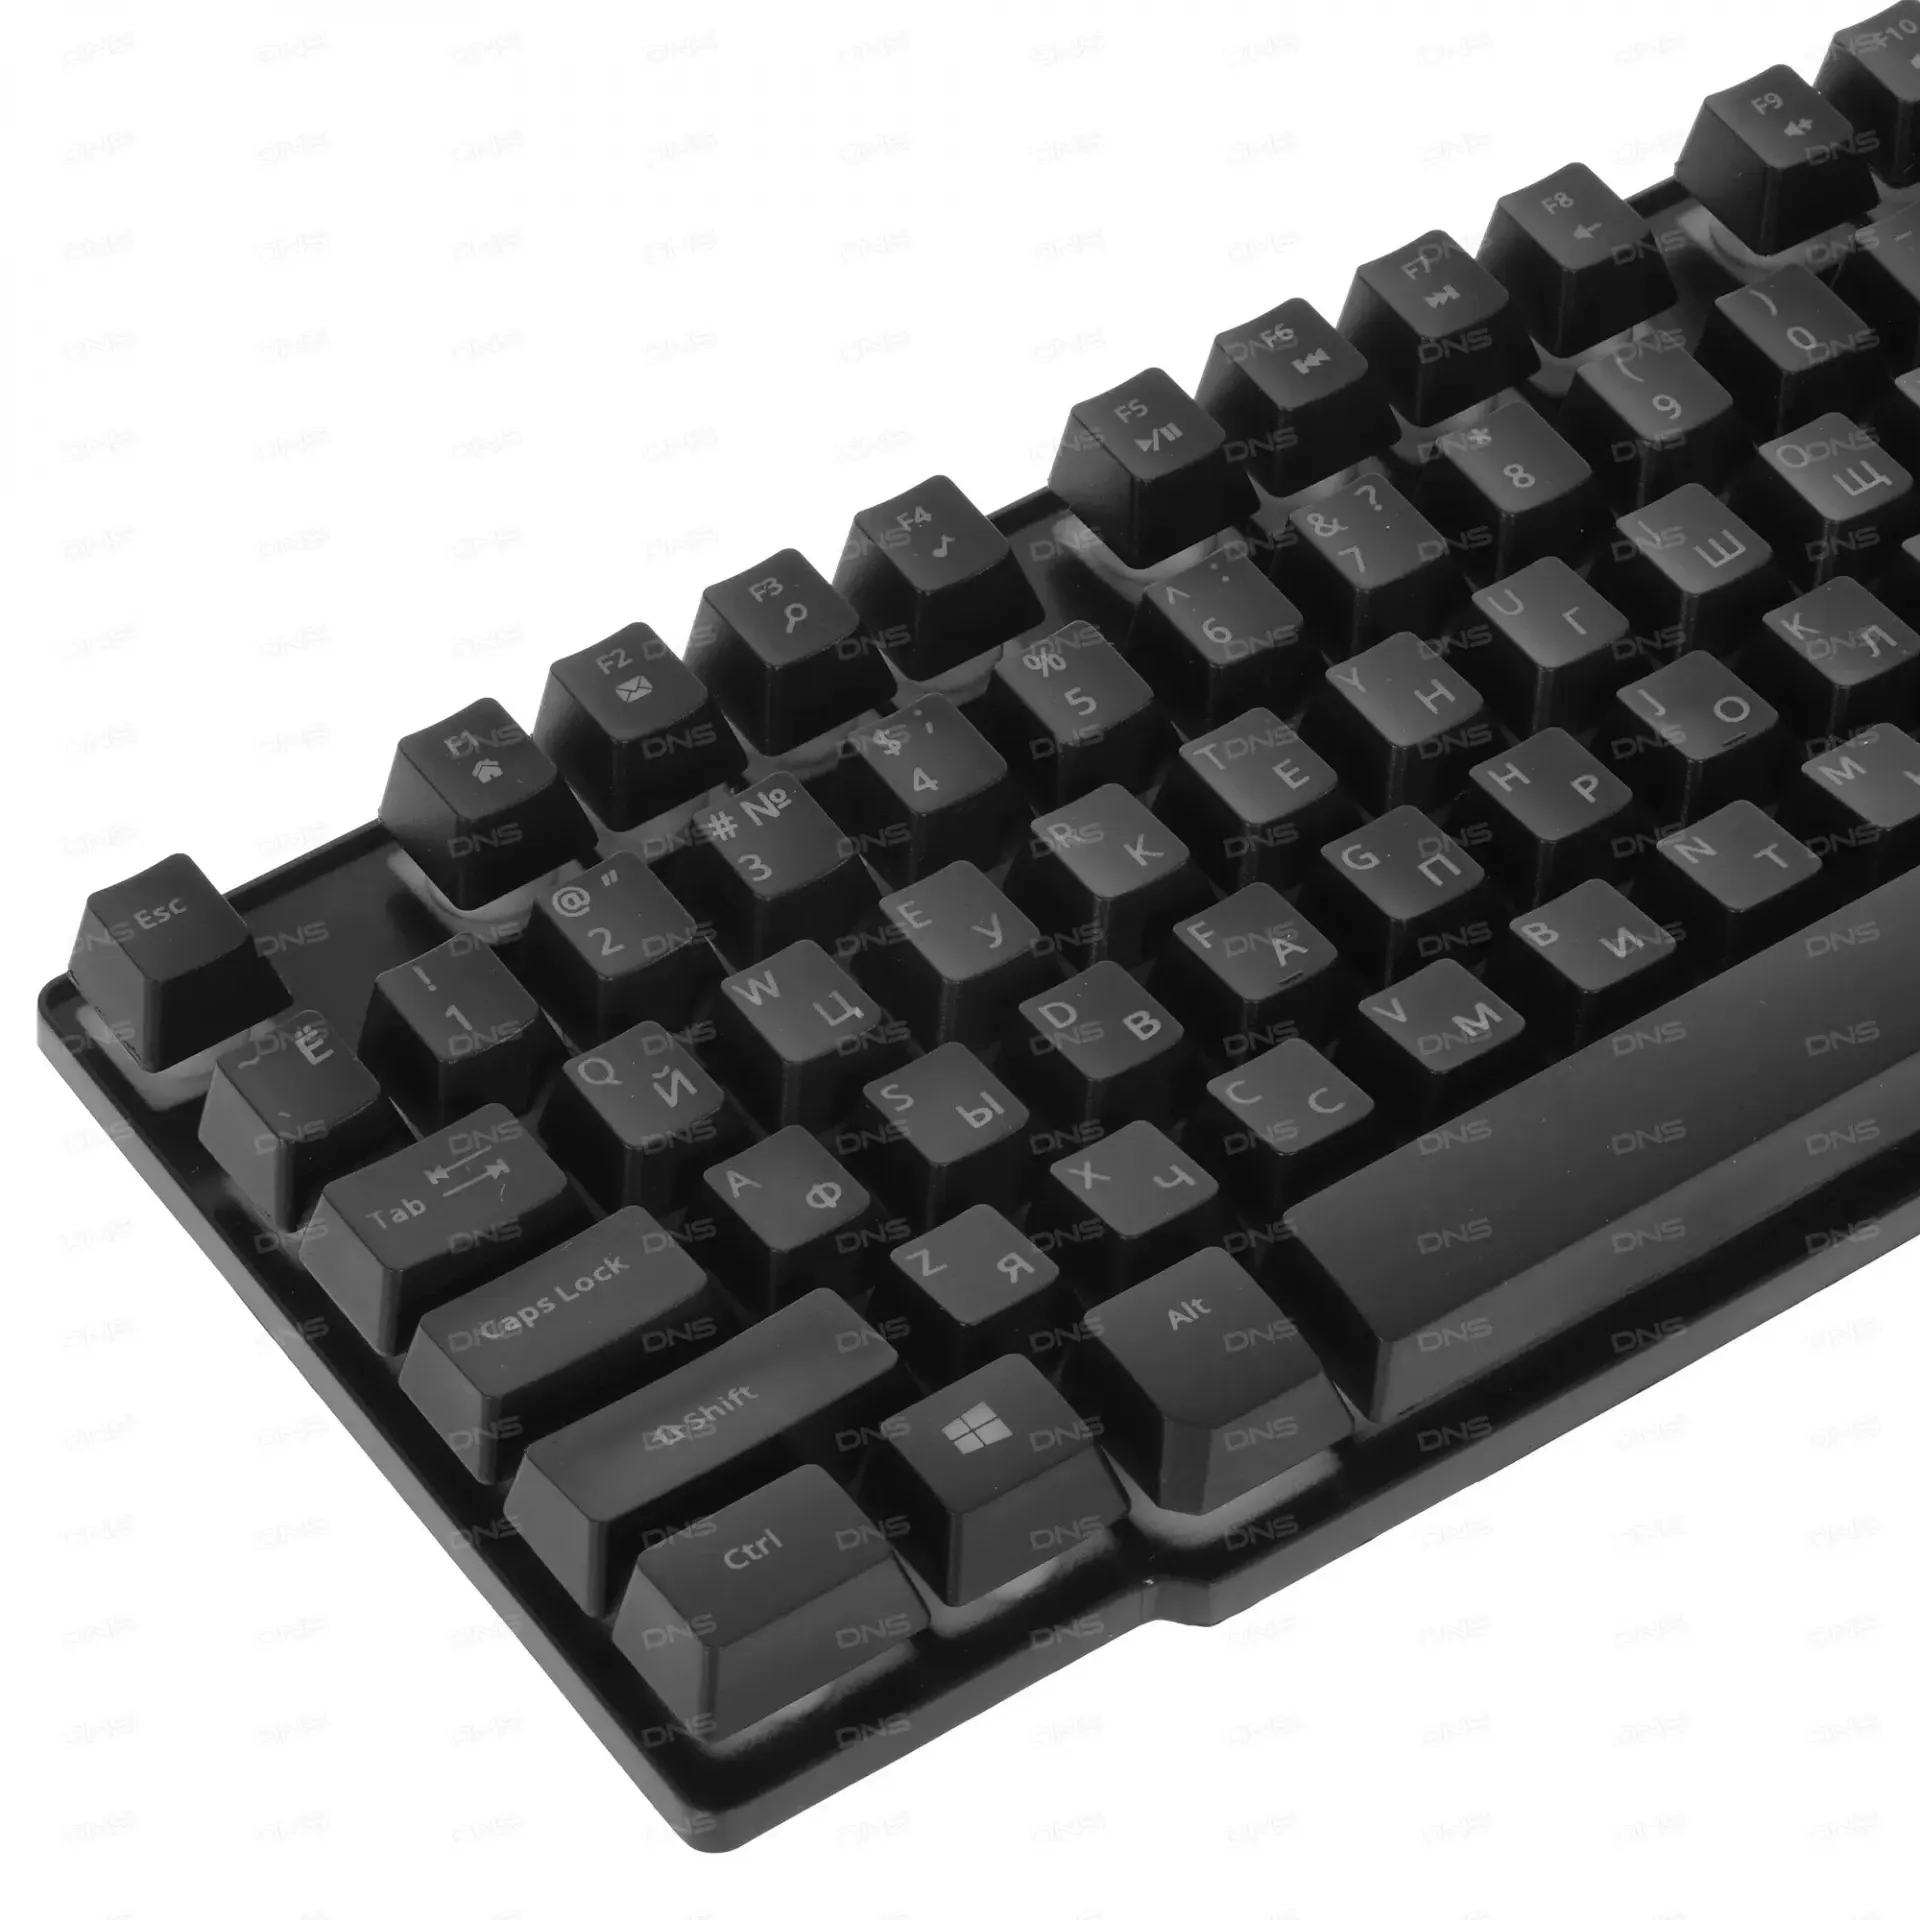 Игровой набор 4 В 1 Defender Singularity MKP-118 Black USB клавиатура + мышь + гарнитура + коврик#4